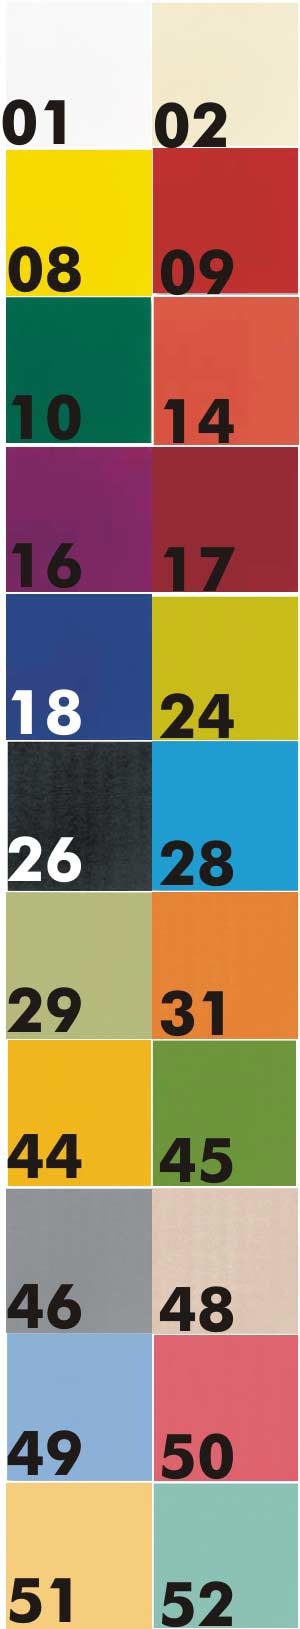 Salg af servietter, duni, 3-lags, 40x40cm, 125 stk - farver  Aamand Udlejningscenter.